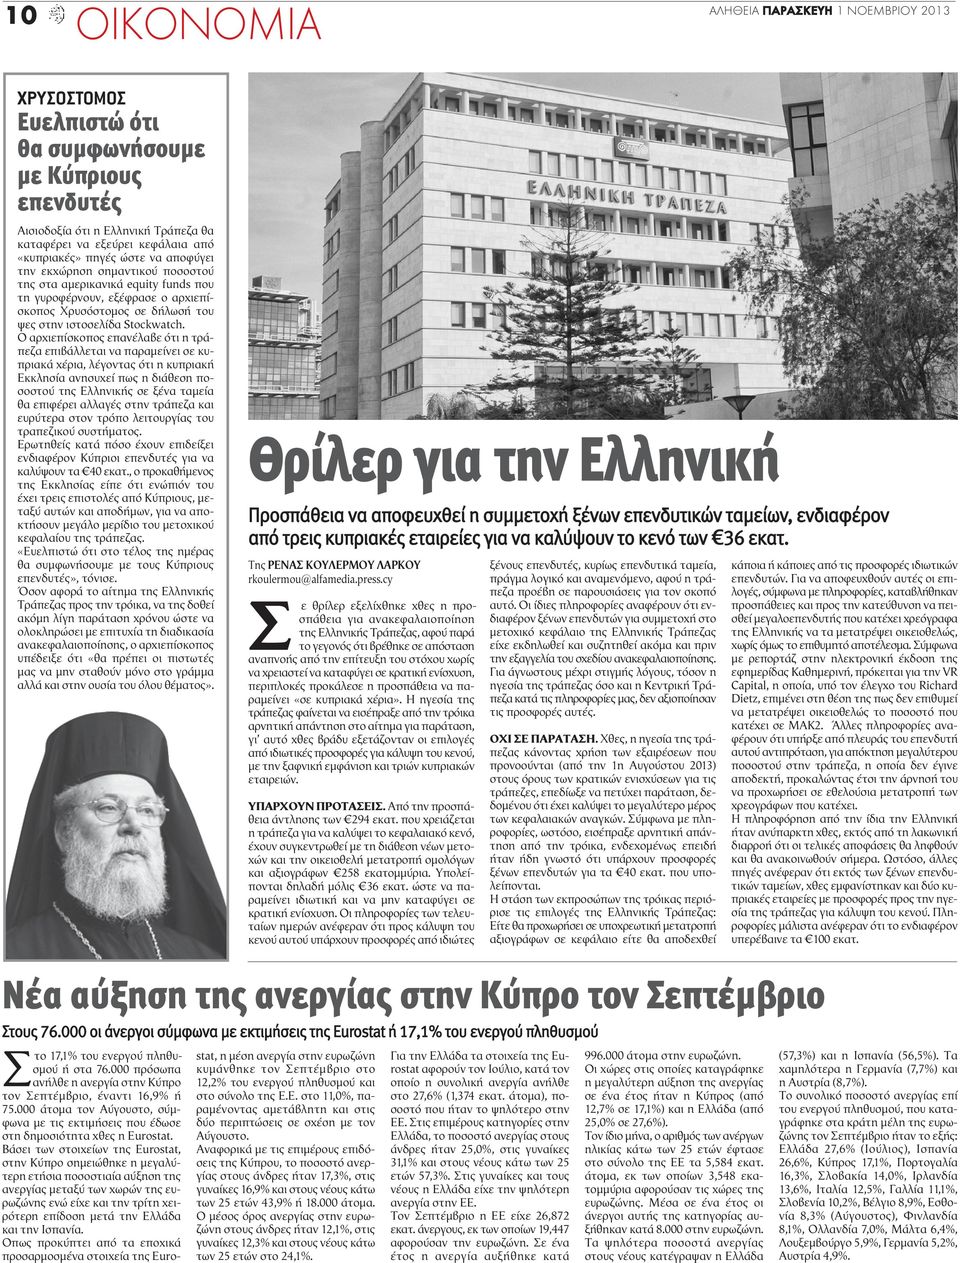 Ο αρχιεπίσκοπος επανέλαβε ότι η τράπεζα επιβάλλεται να παραμείνει σε κυπριακά χέρια, λέγοντας ότι η κυπριακή Εκκλησία ανησυχεί πως η διάθεση ποσοστού της Ελληνικής σε ξένα ταμεία θα επιφέρει αλλαγές